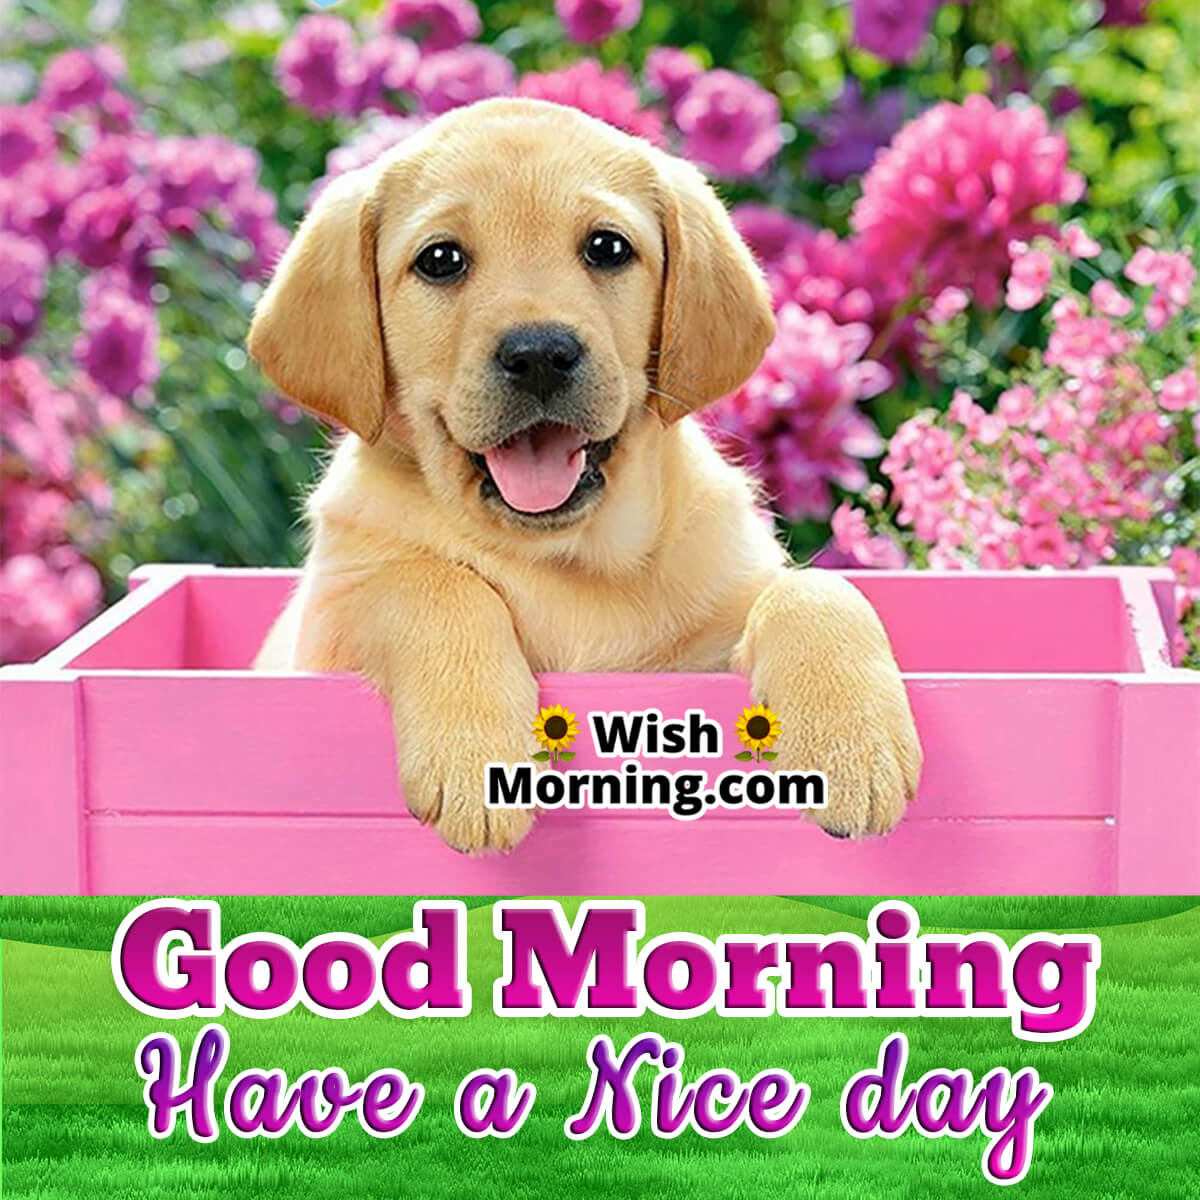 Good Morning Dog Image